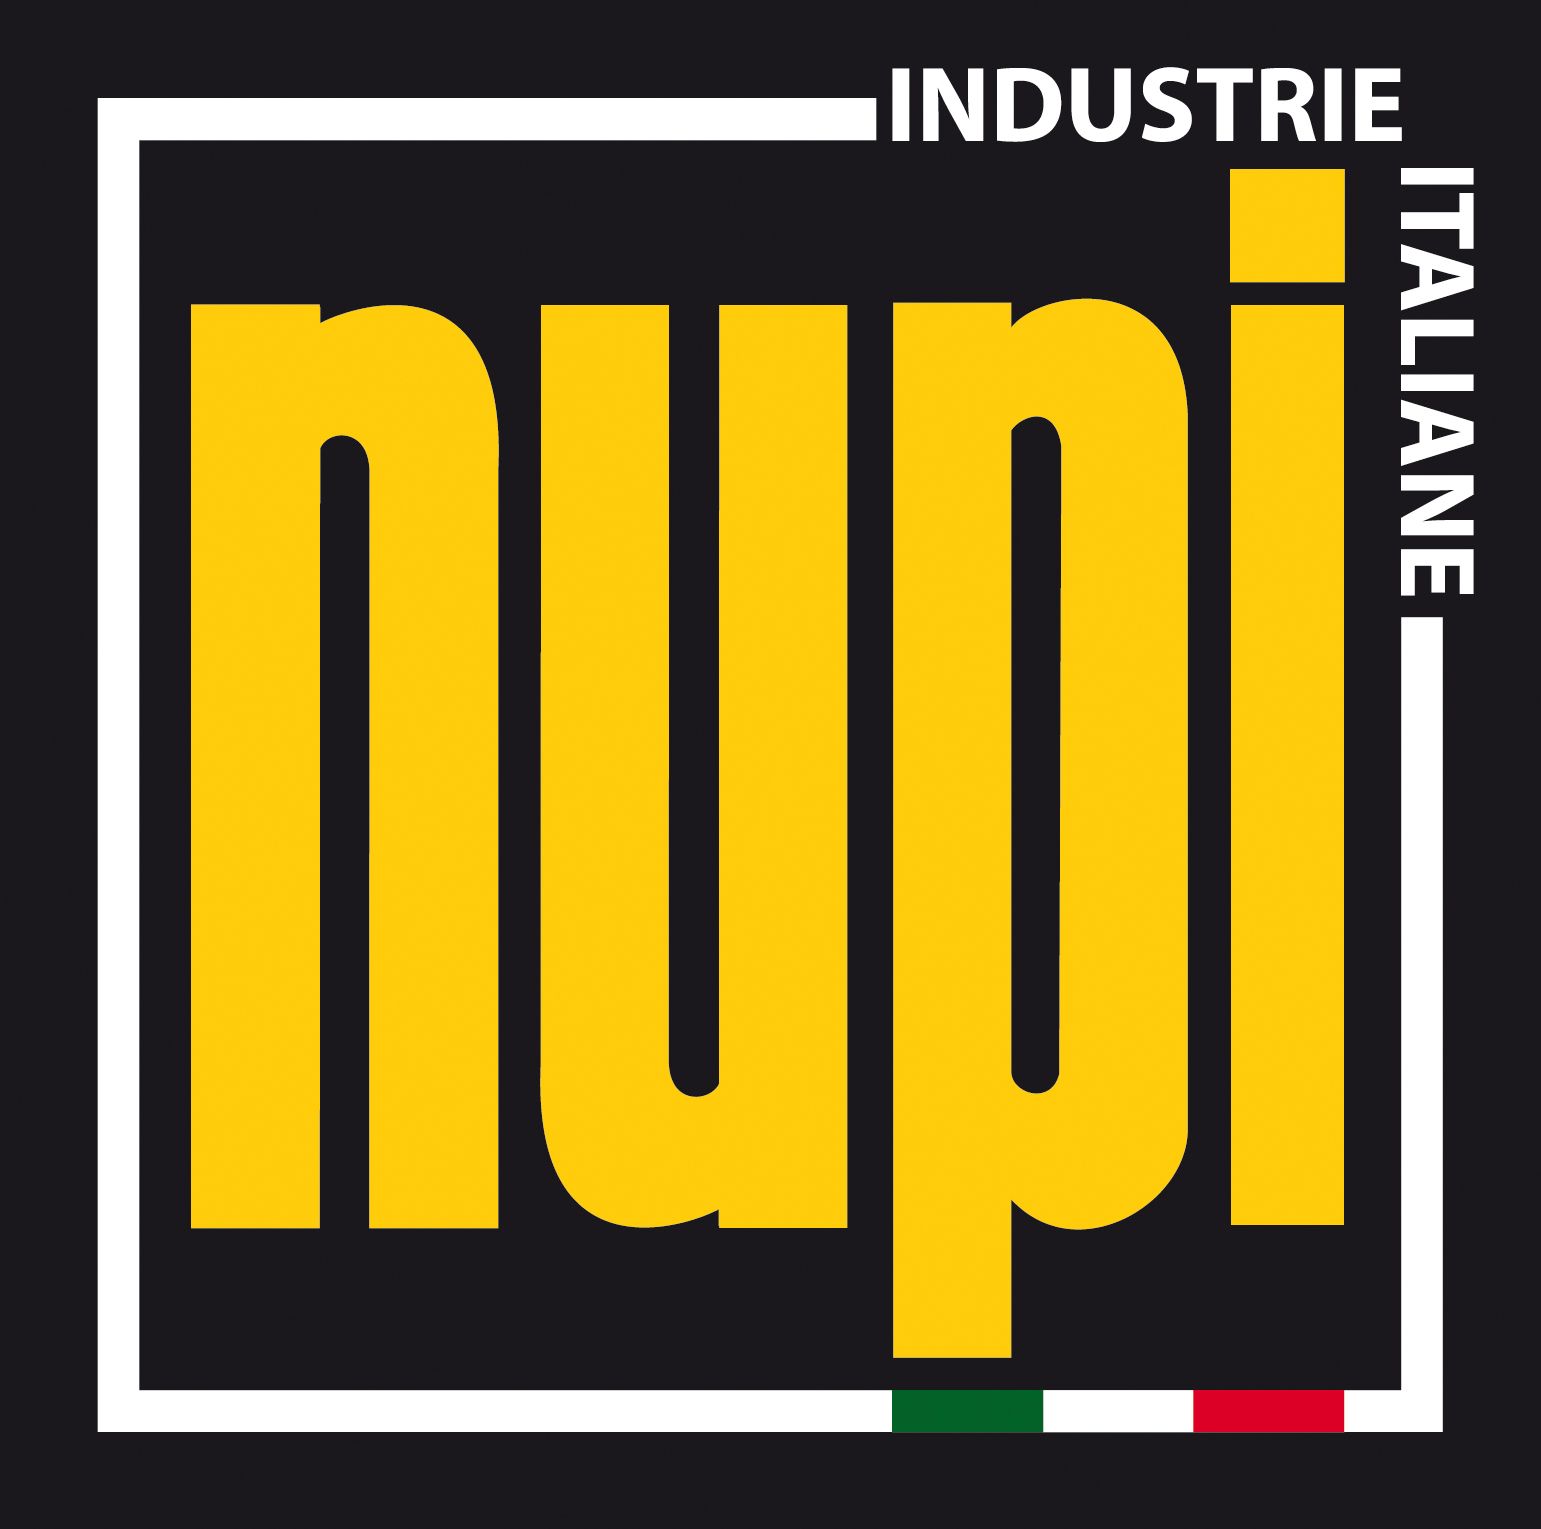 NUPI Industrie Italiane S.p.A. Italy